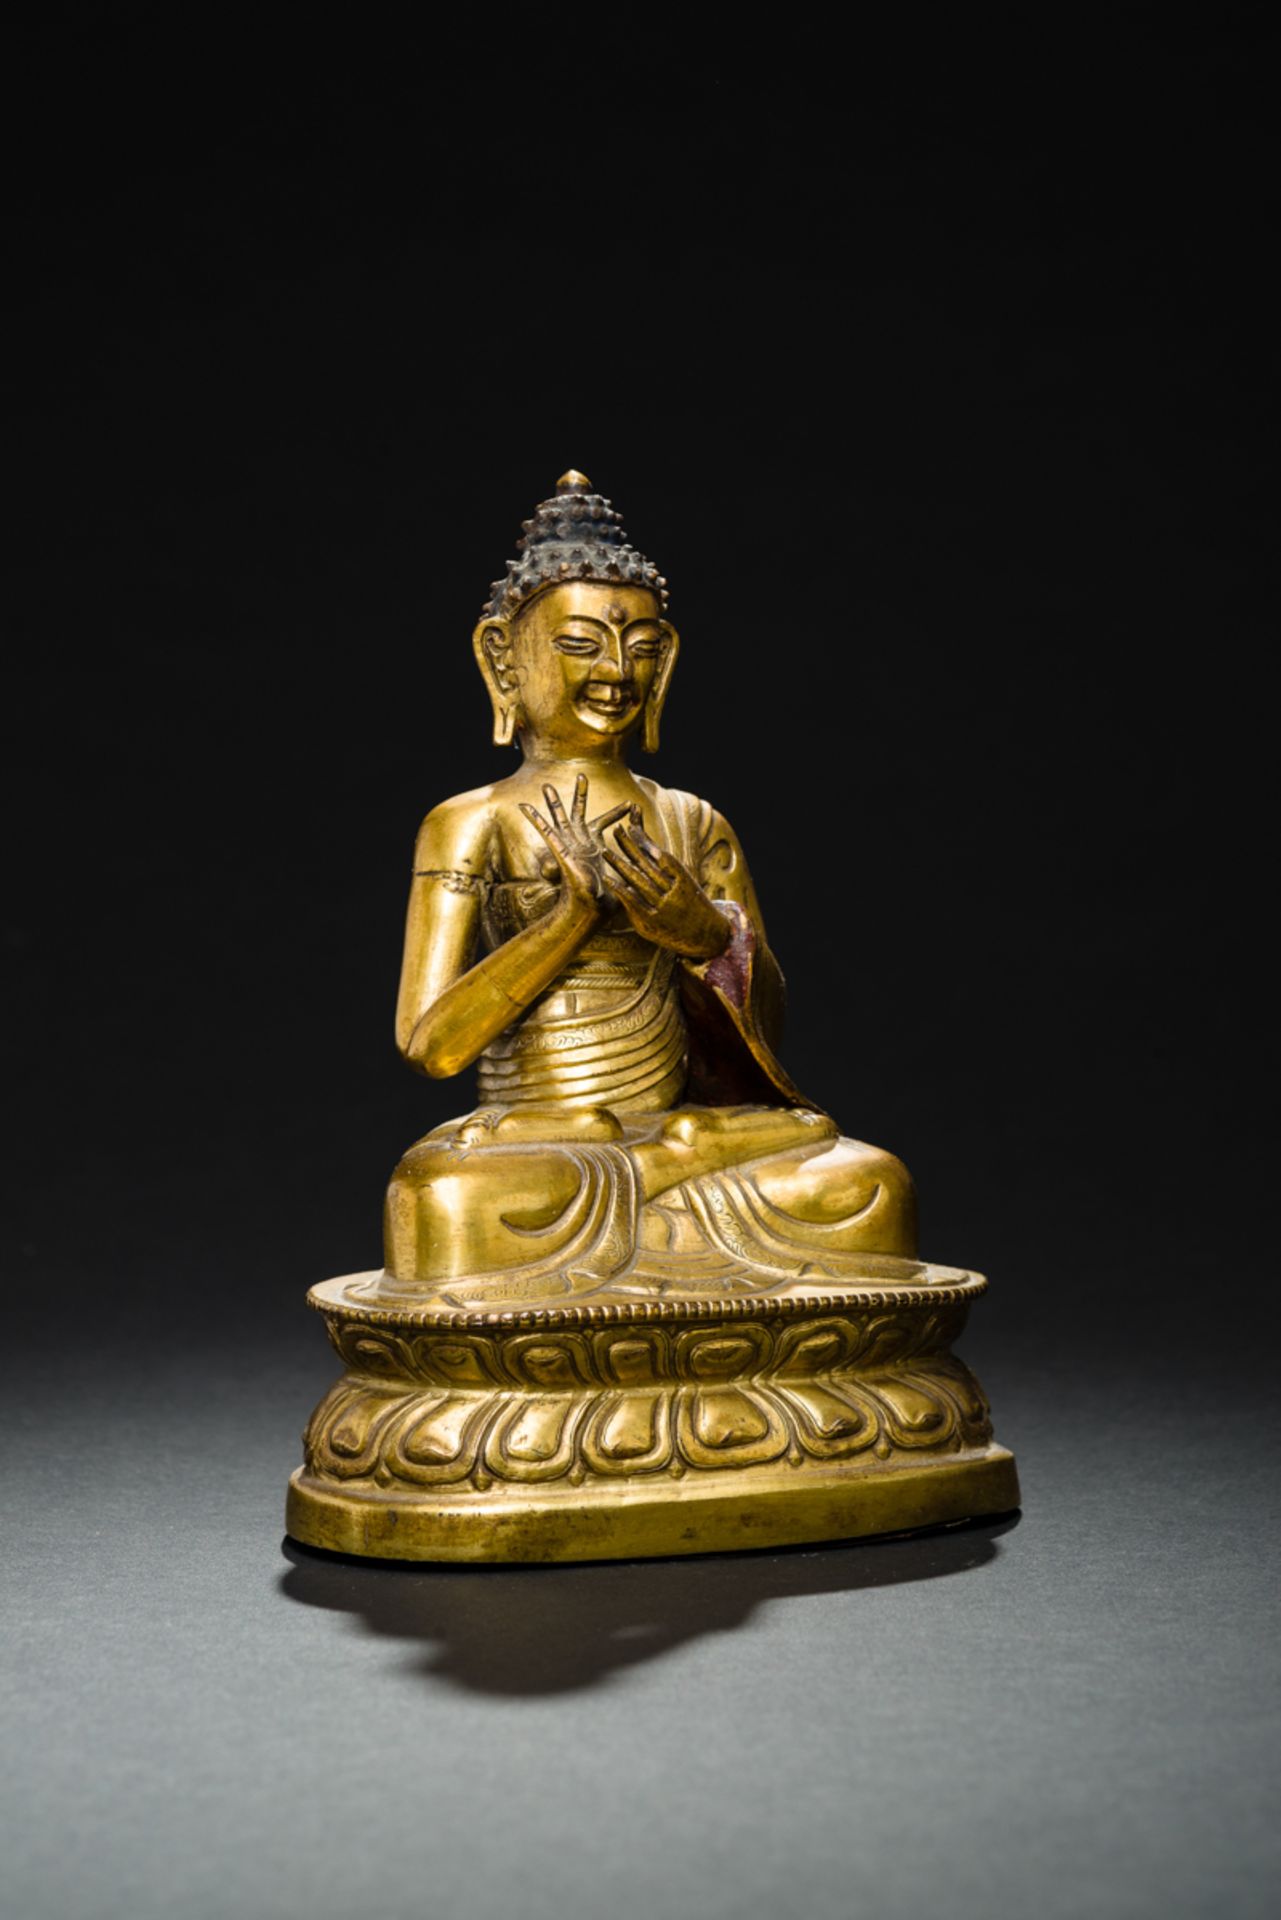 DER PREDIGENDE BUDDHA SHAKYAMUNIFeuervergoldete Bronze. Sinotibetisch, Qing-Dynastie, fr. 19. Jh.In